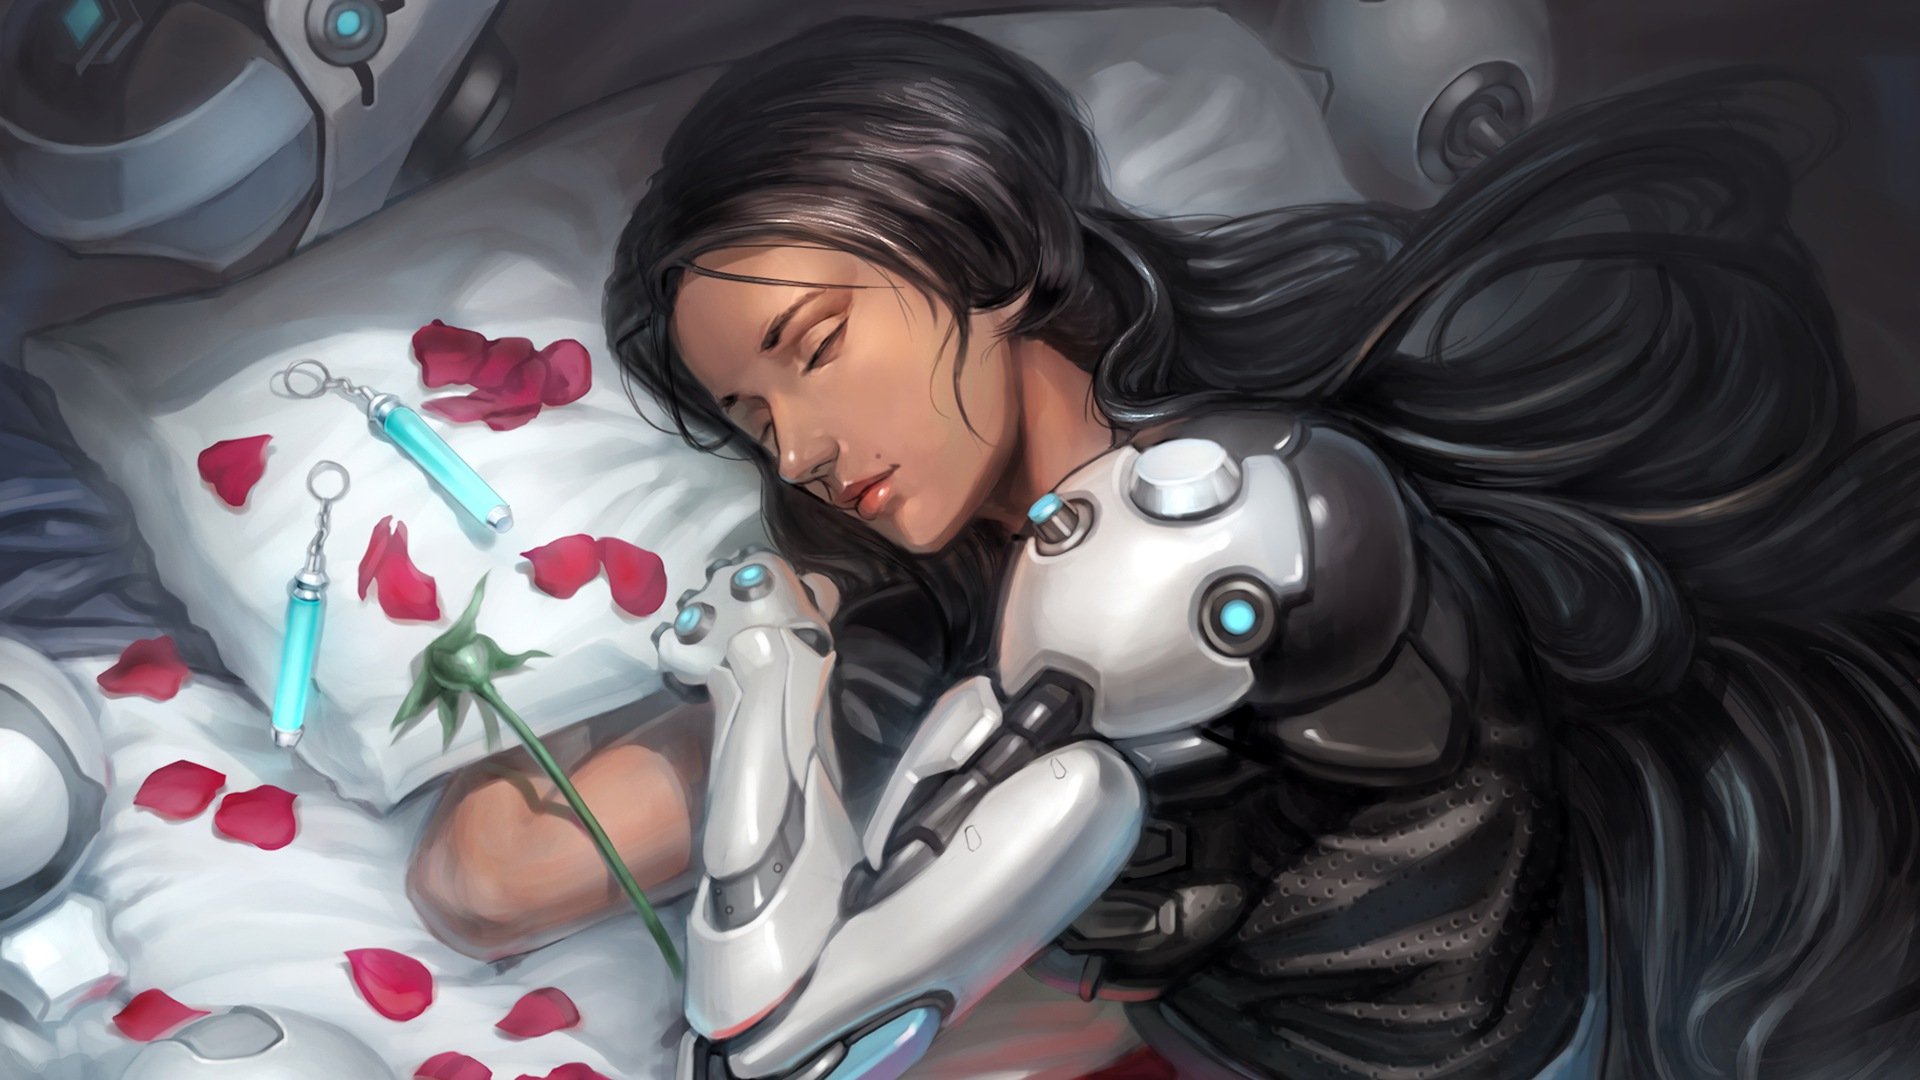 Overwatch, Symmetra (Overwatch), Video games, Red flowers, Petals, Sleeping Wallpaper